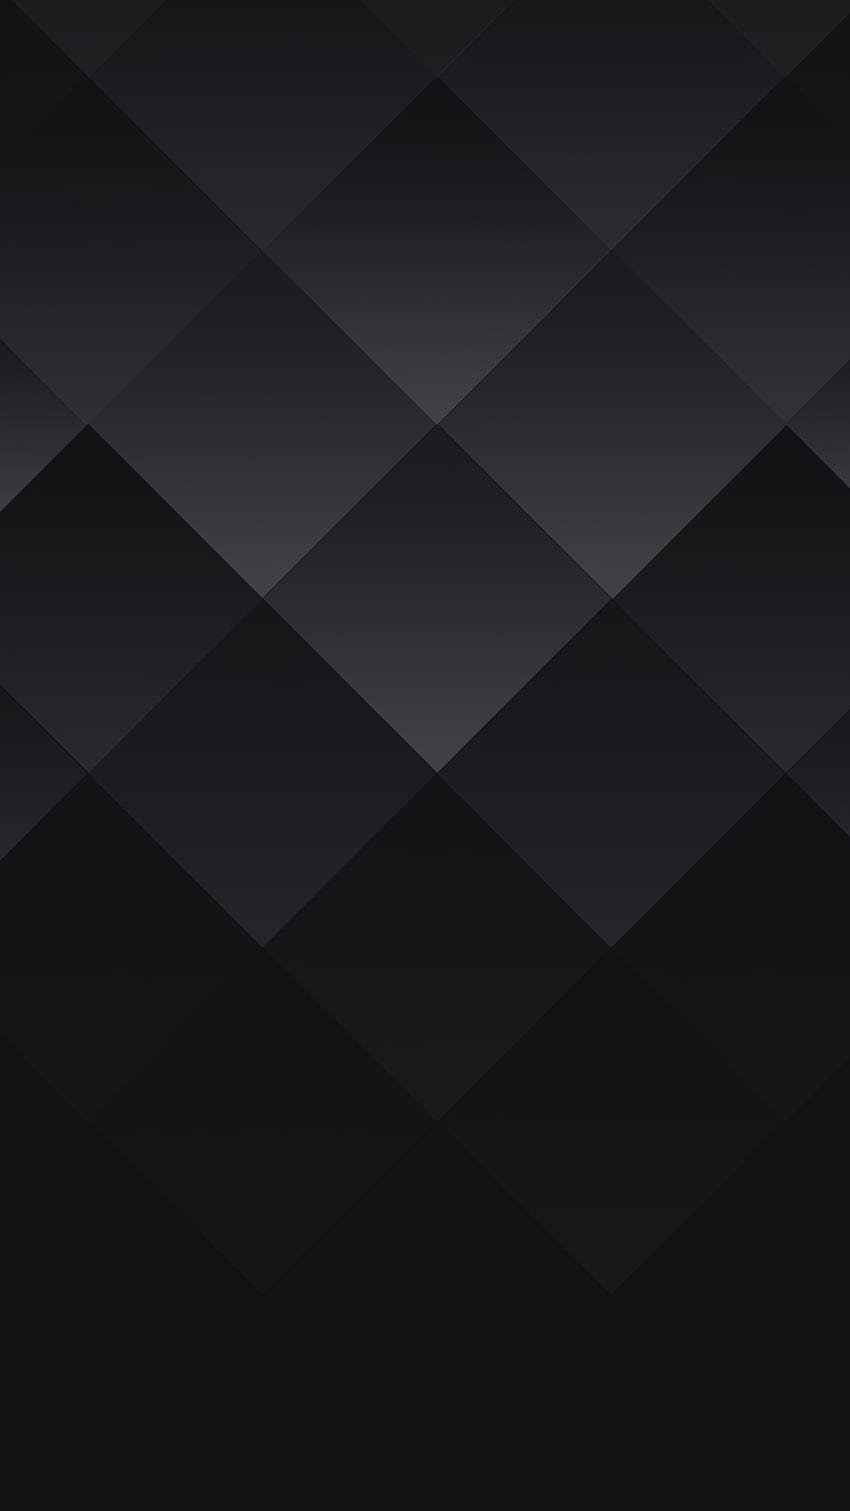 BlackBerry KEYone .png 1 440×2 560 pixels. Papel De Parede De Madère, Papel De Parede Android, Papel De Parede Celular, Dark Pixel Fond d'écran de téléphone HD